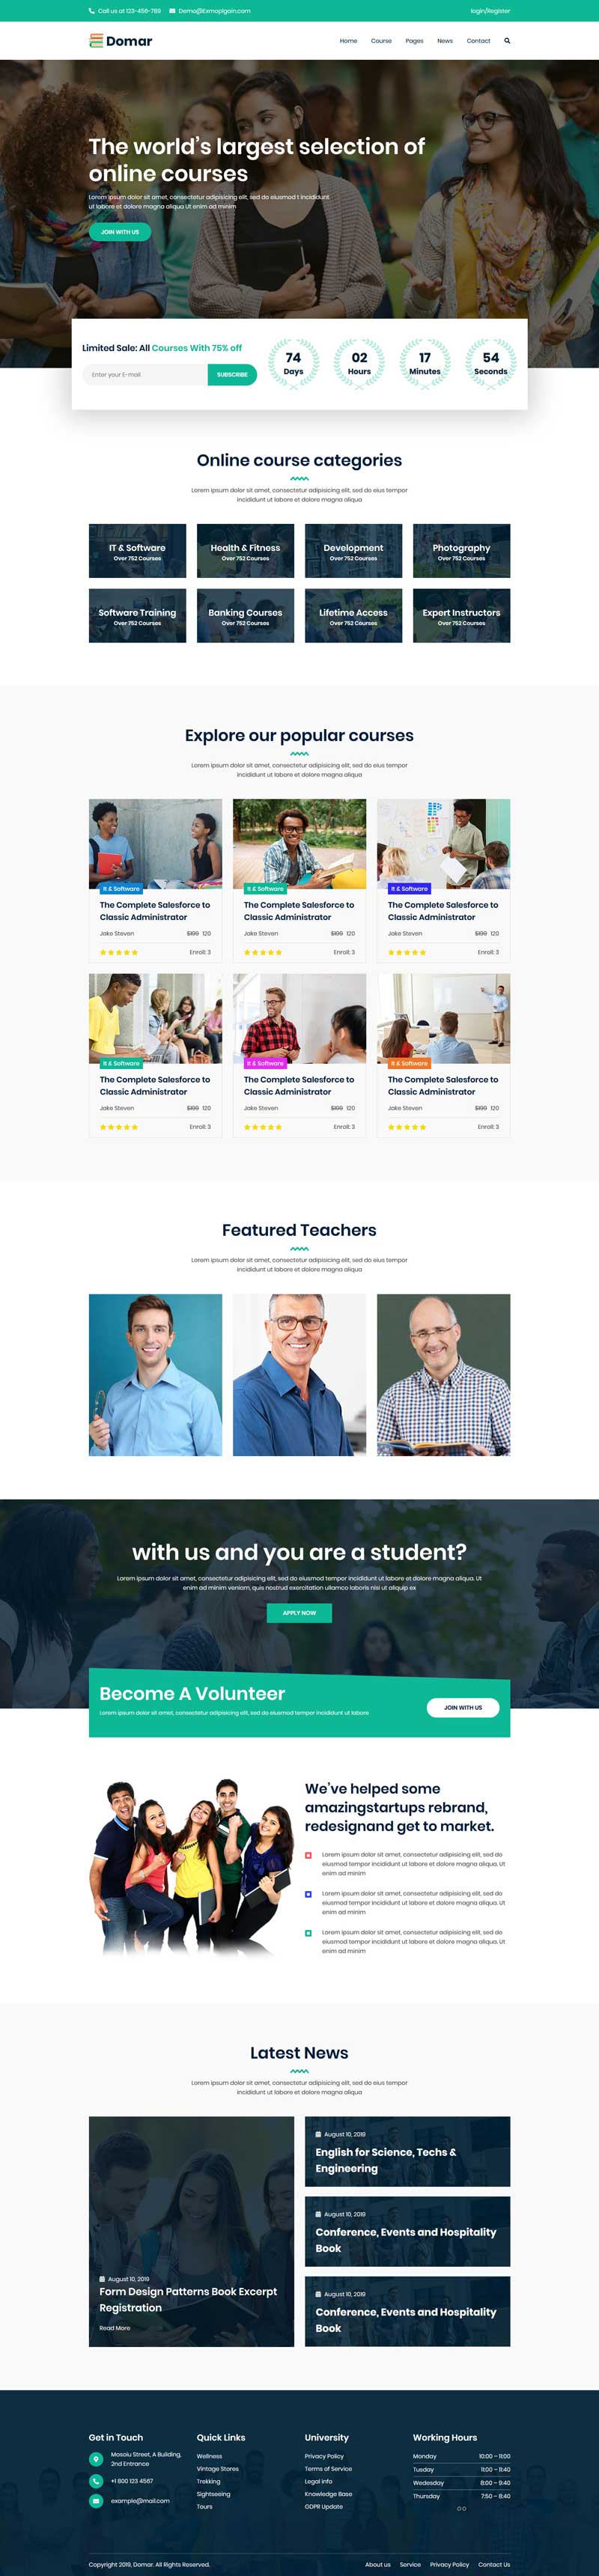 网上课程教育平台网站模板